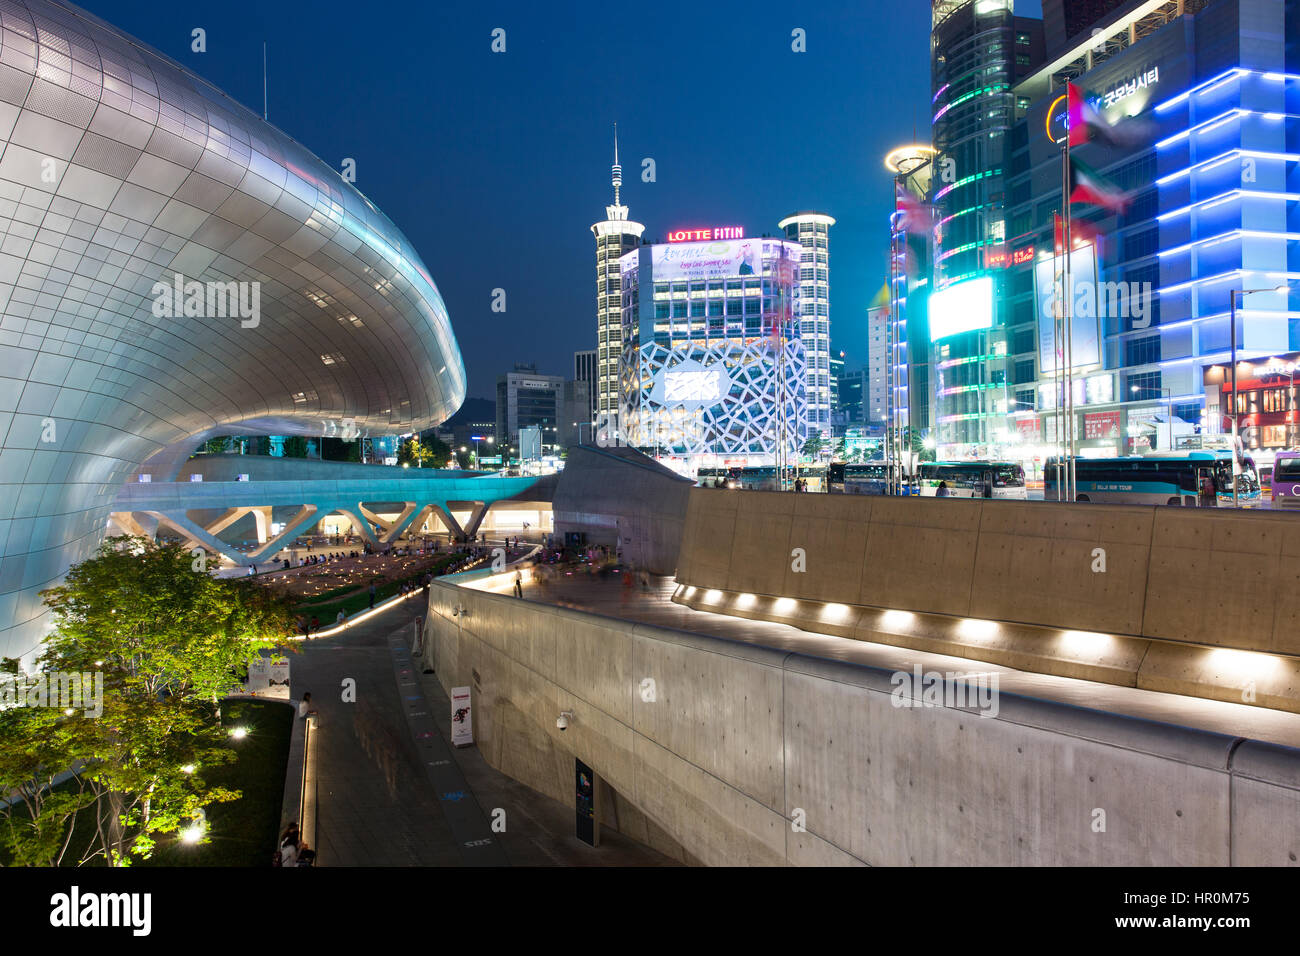 Séoul, République de Corée - 15 août 2014 : vue de la nuit, des gratte-ciel et Dongdaemun Plaza shopping area le 15 août 2014, Séoul, Corée. Banque D'Images